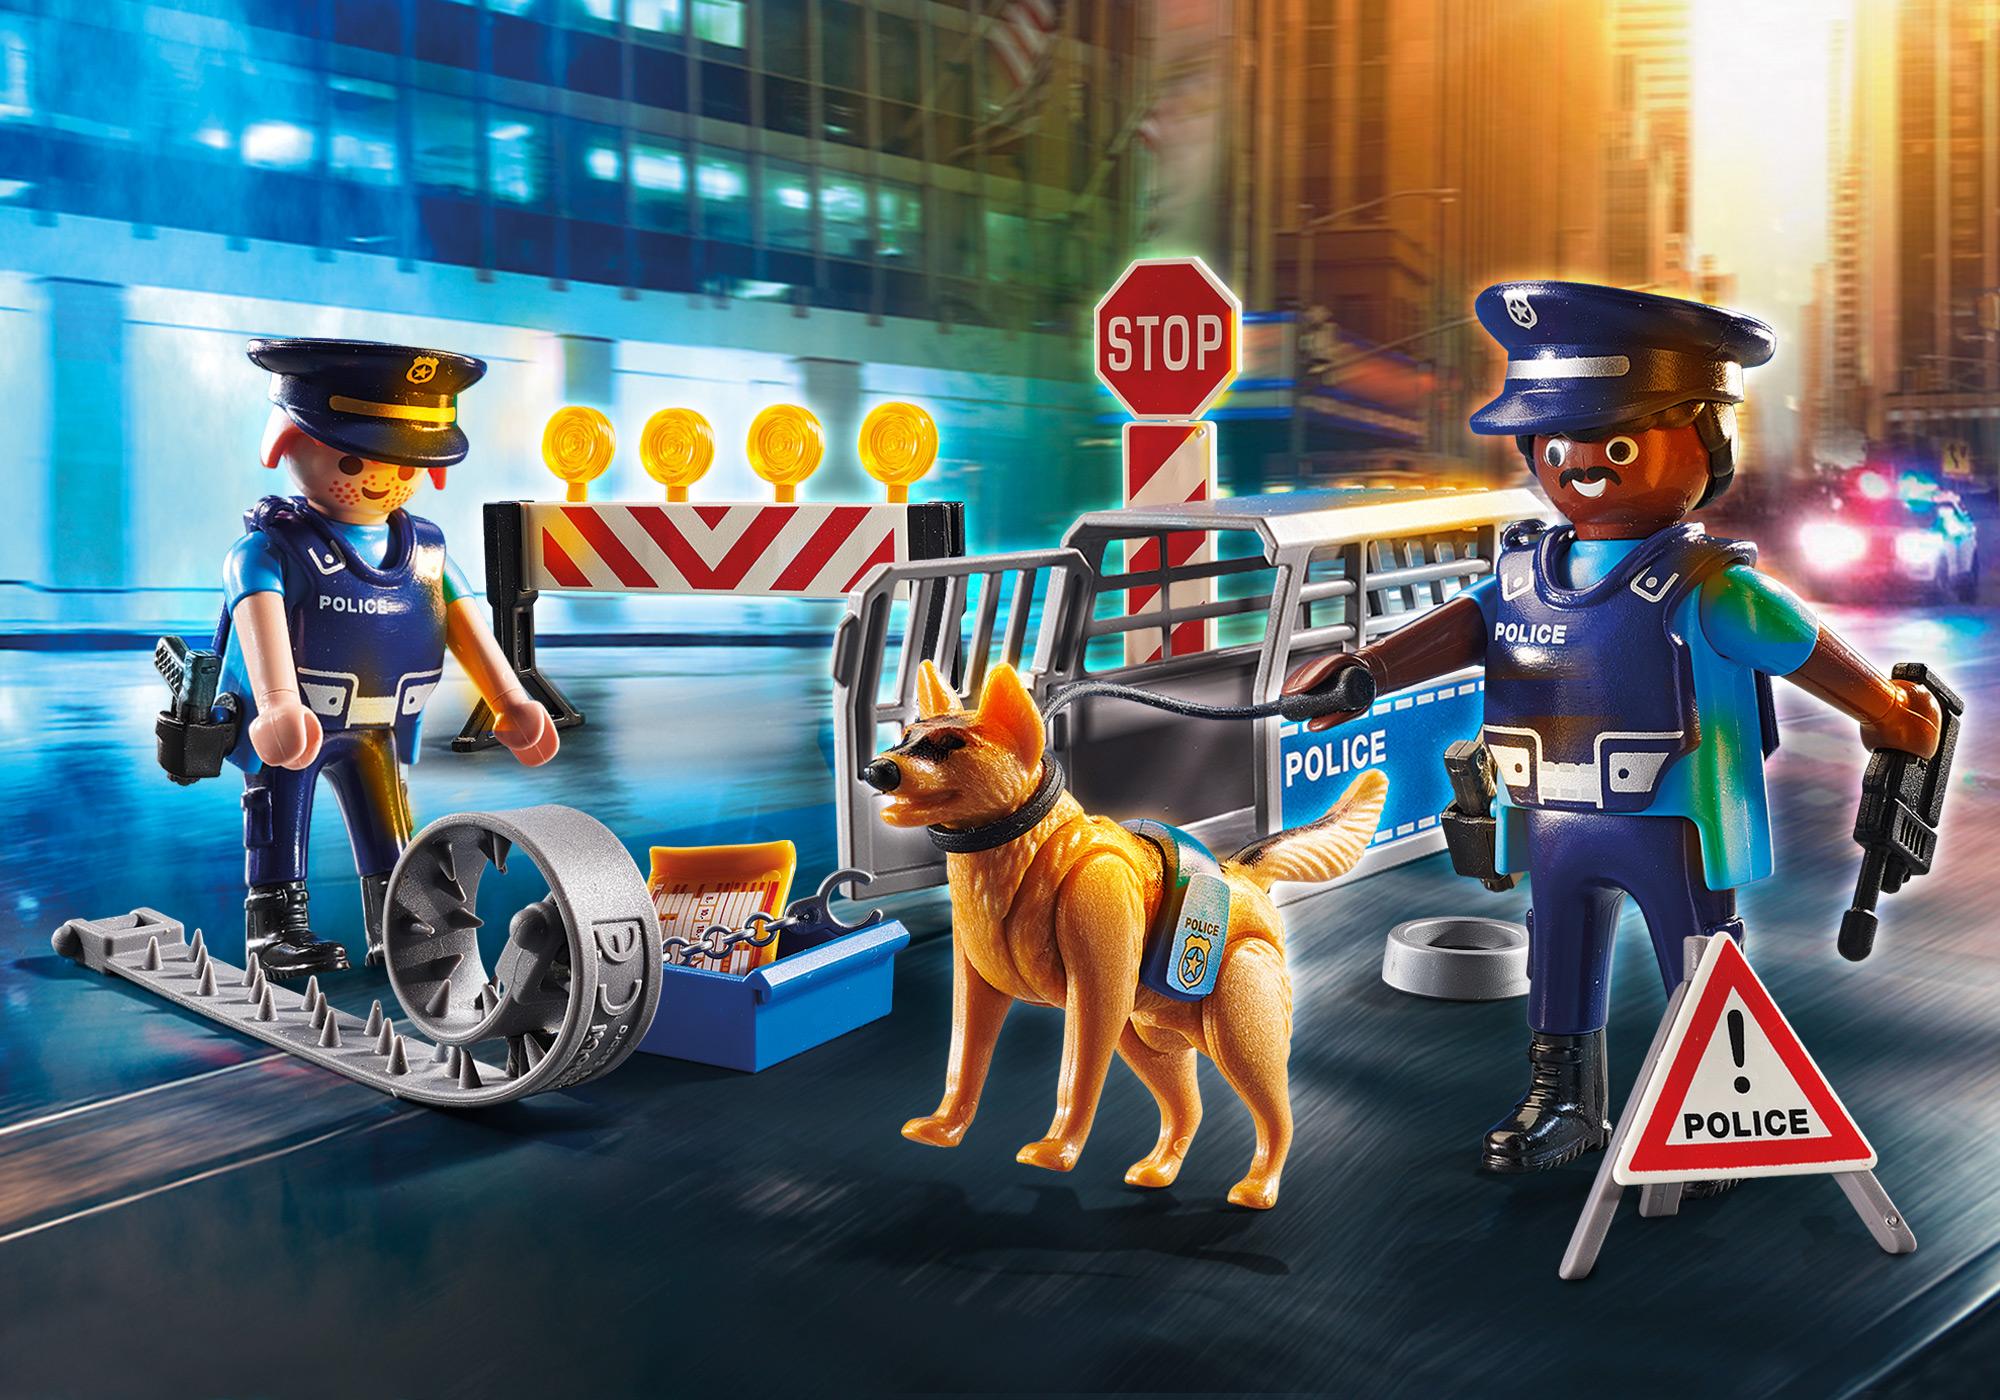 playmobil chien policier